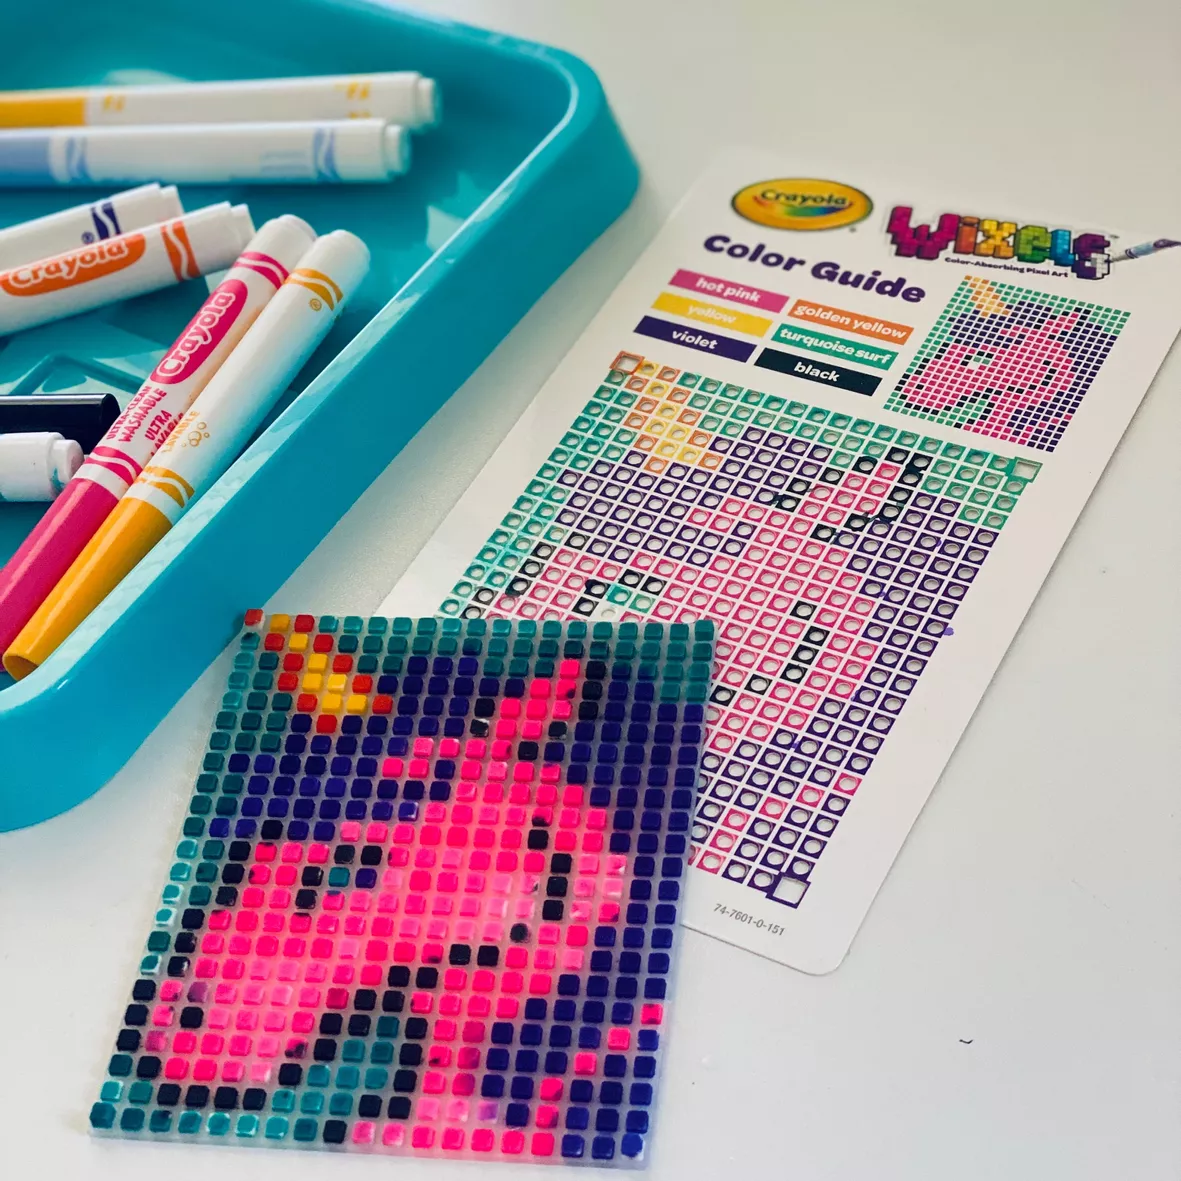 Crayola Wixels Unicorn Activity Kit : Target